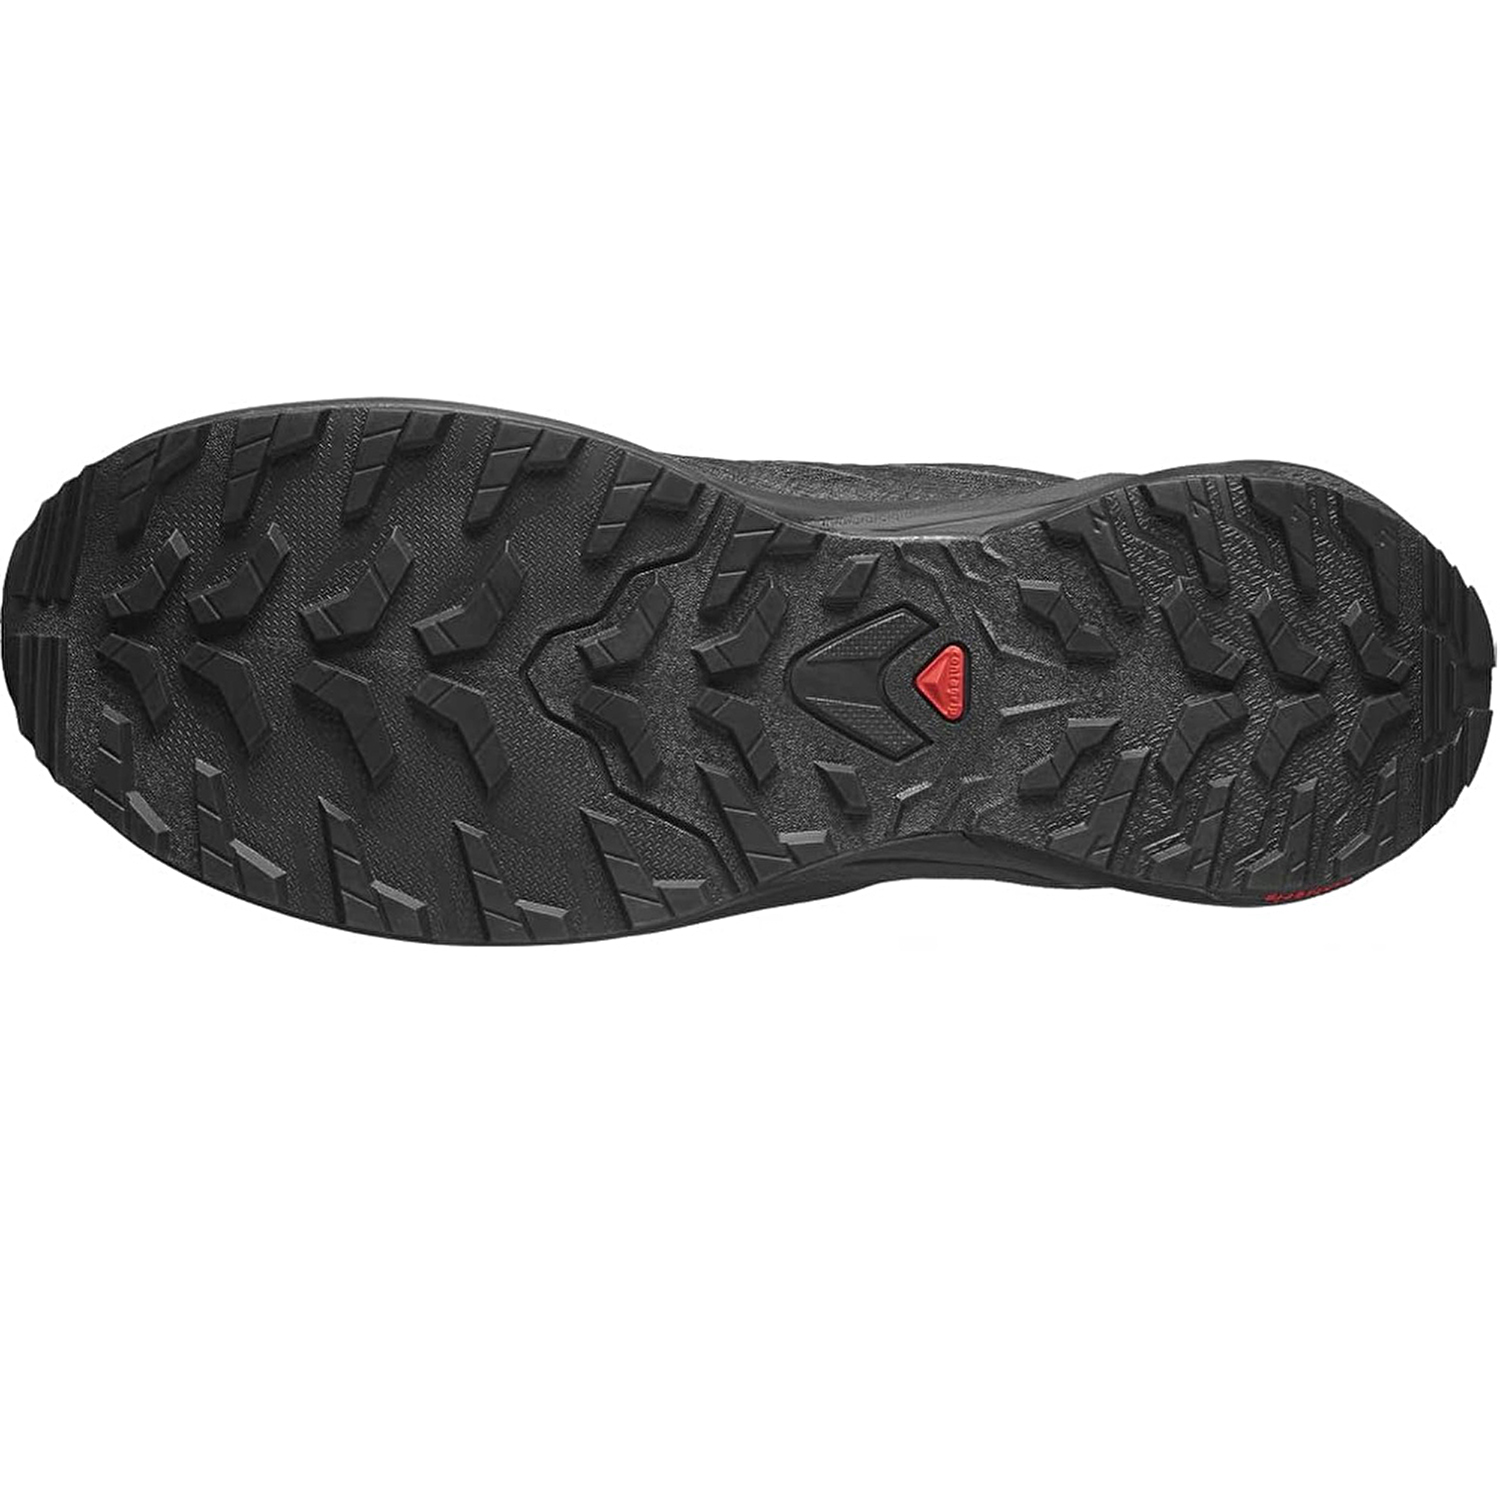 Salomon X-Adventure Gtx Erkek Patika Koşu Ayakkabısı